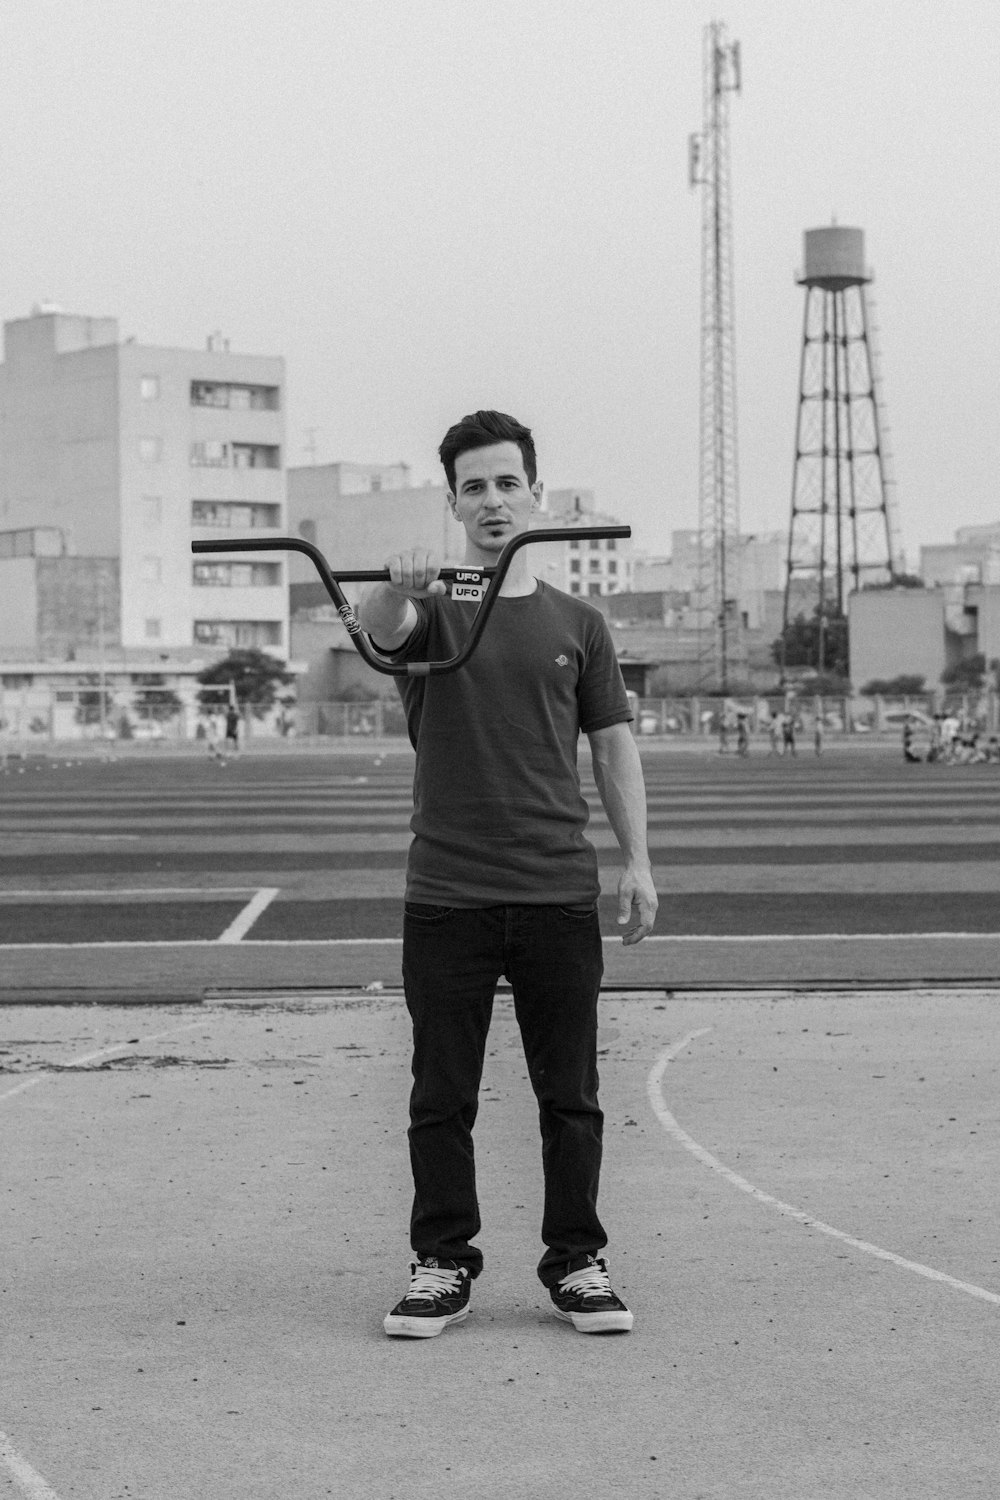 a man holding a baseball bat in a parking lot